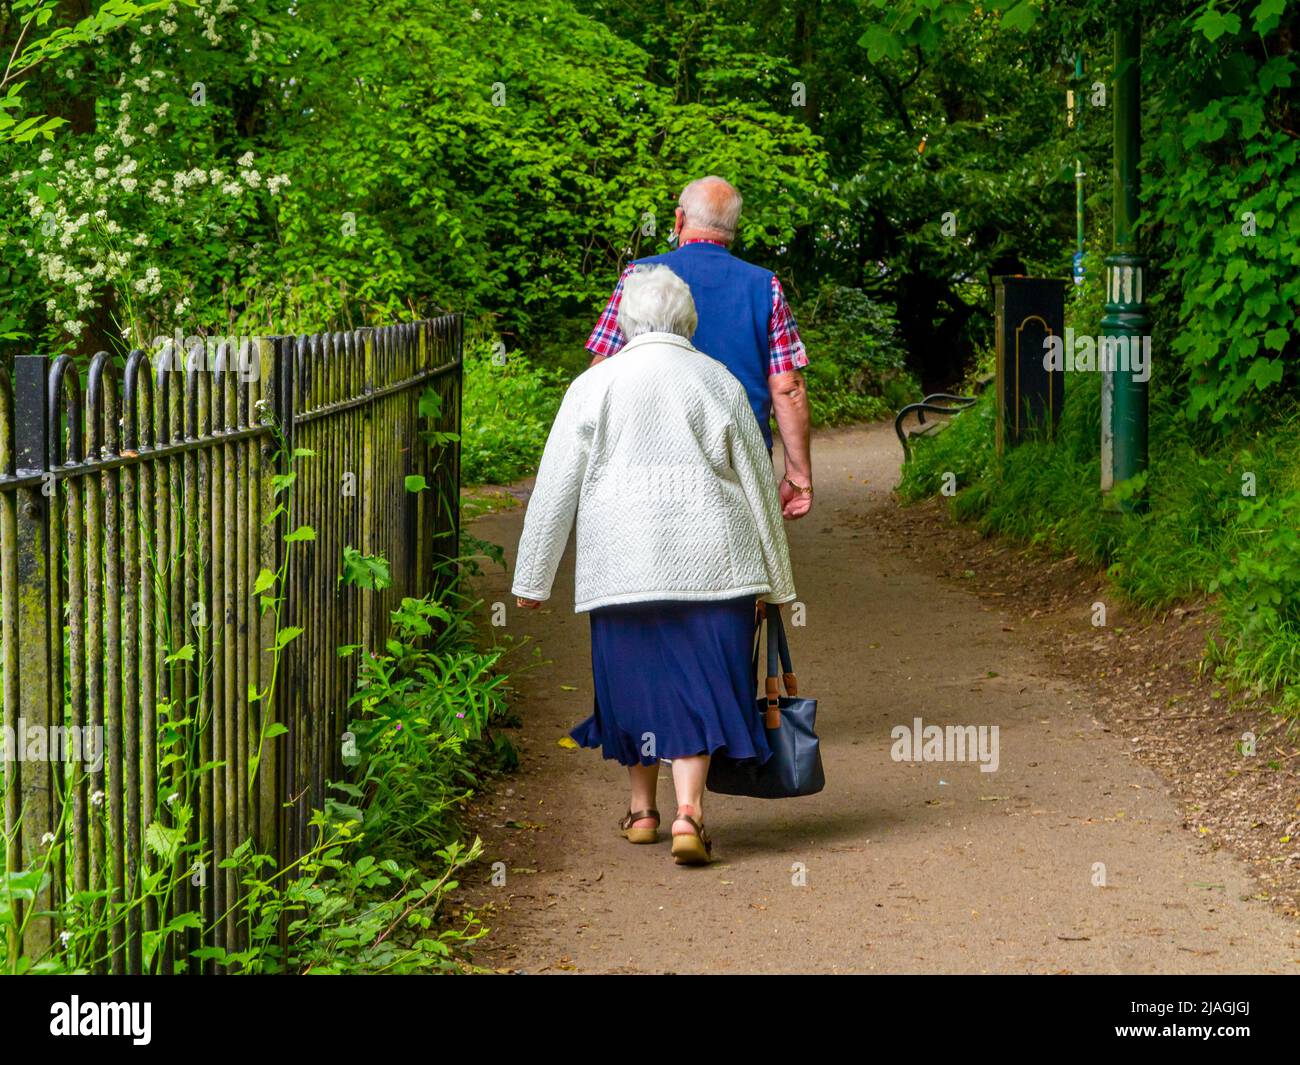 Coppie anziane che camminano su un sentiero in un parco pubblico con recinzione in metallo e alberi. Foto Stock